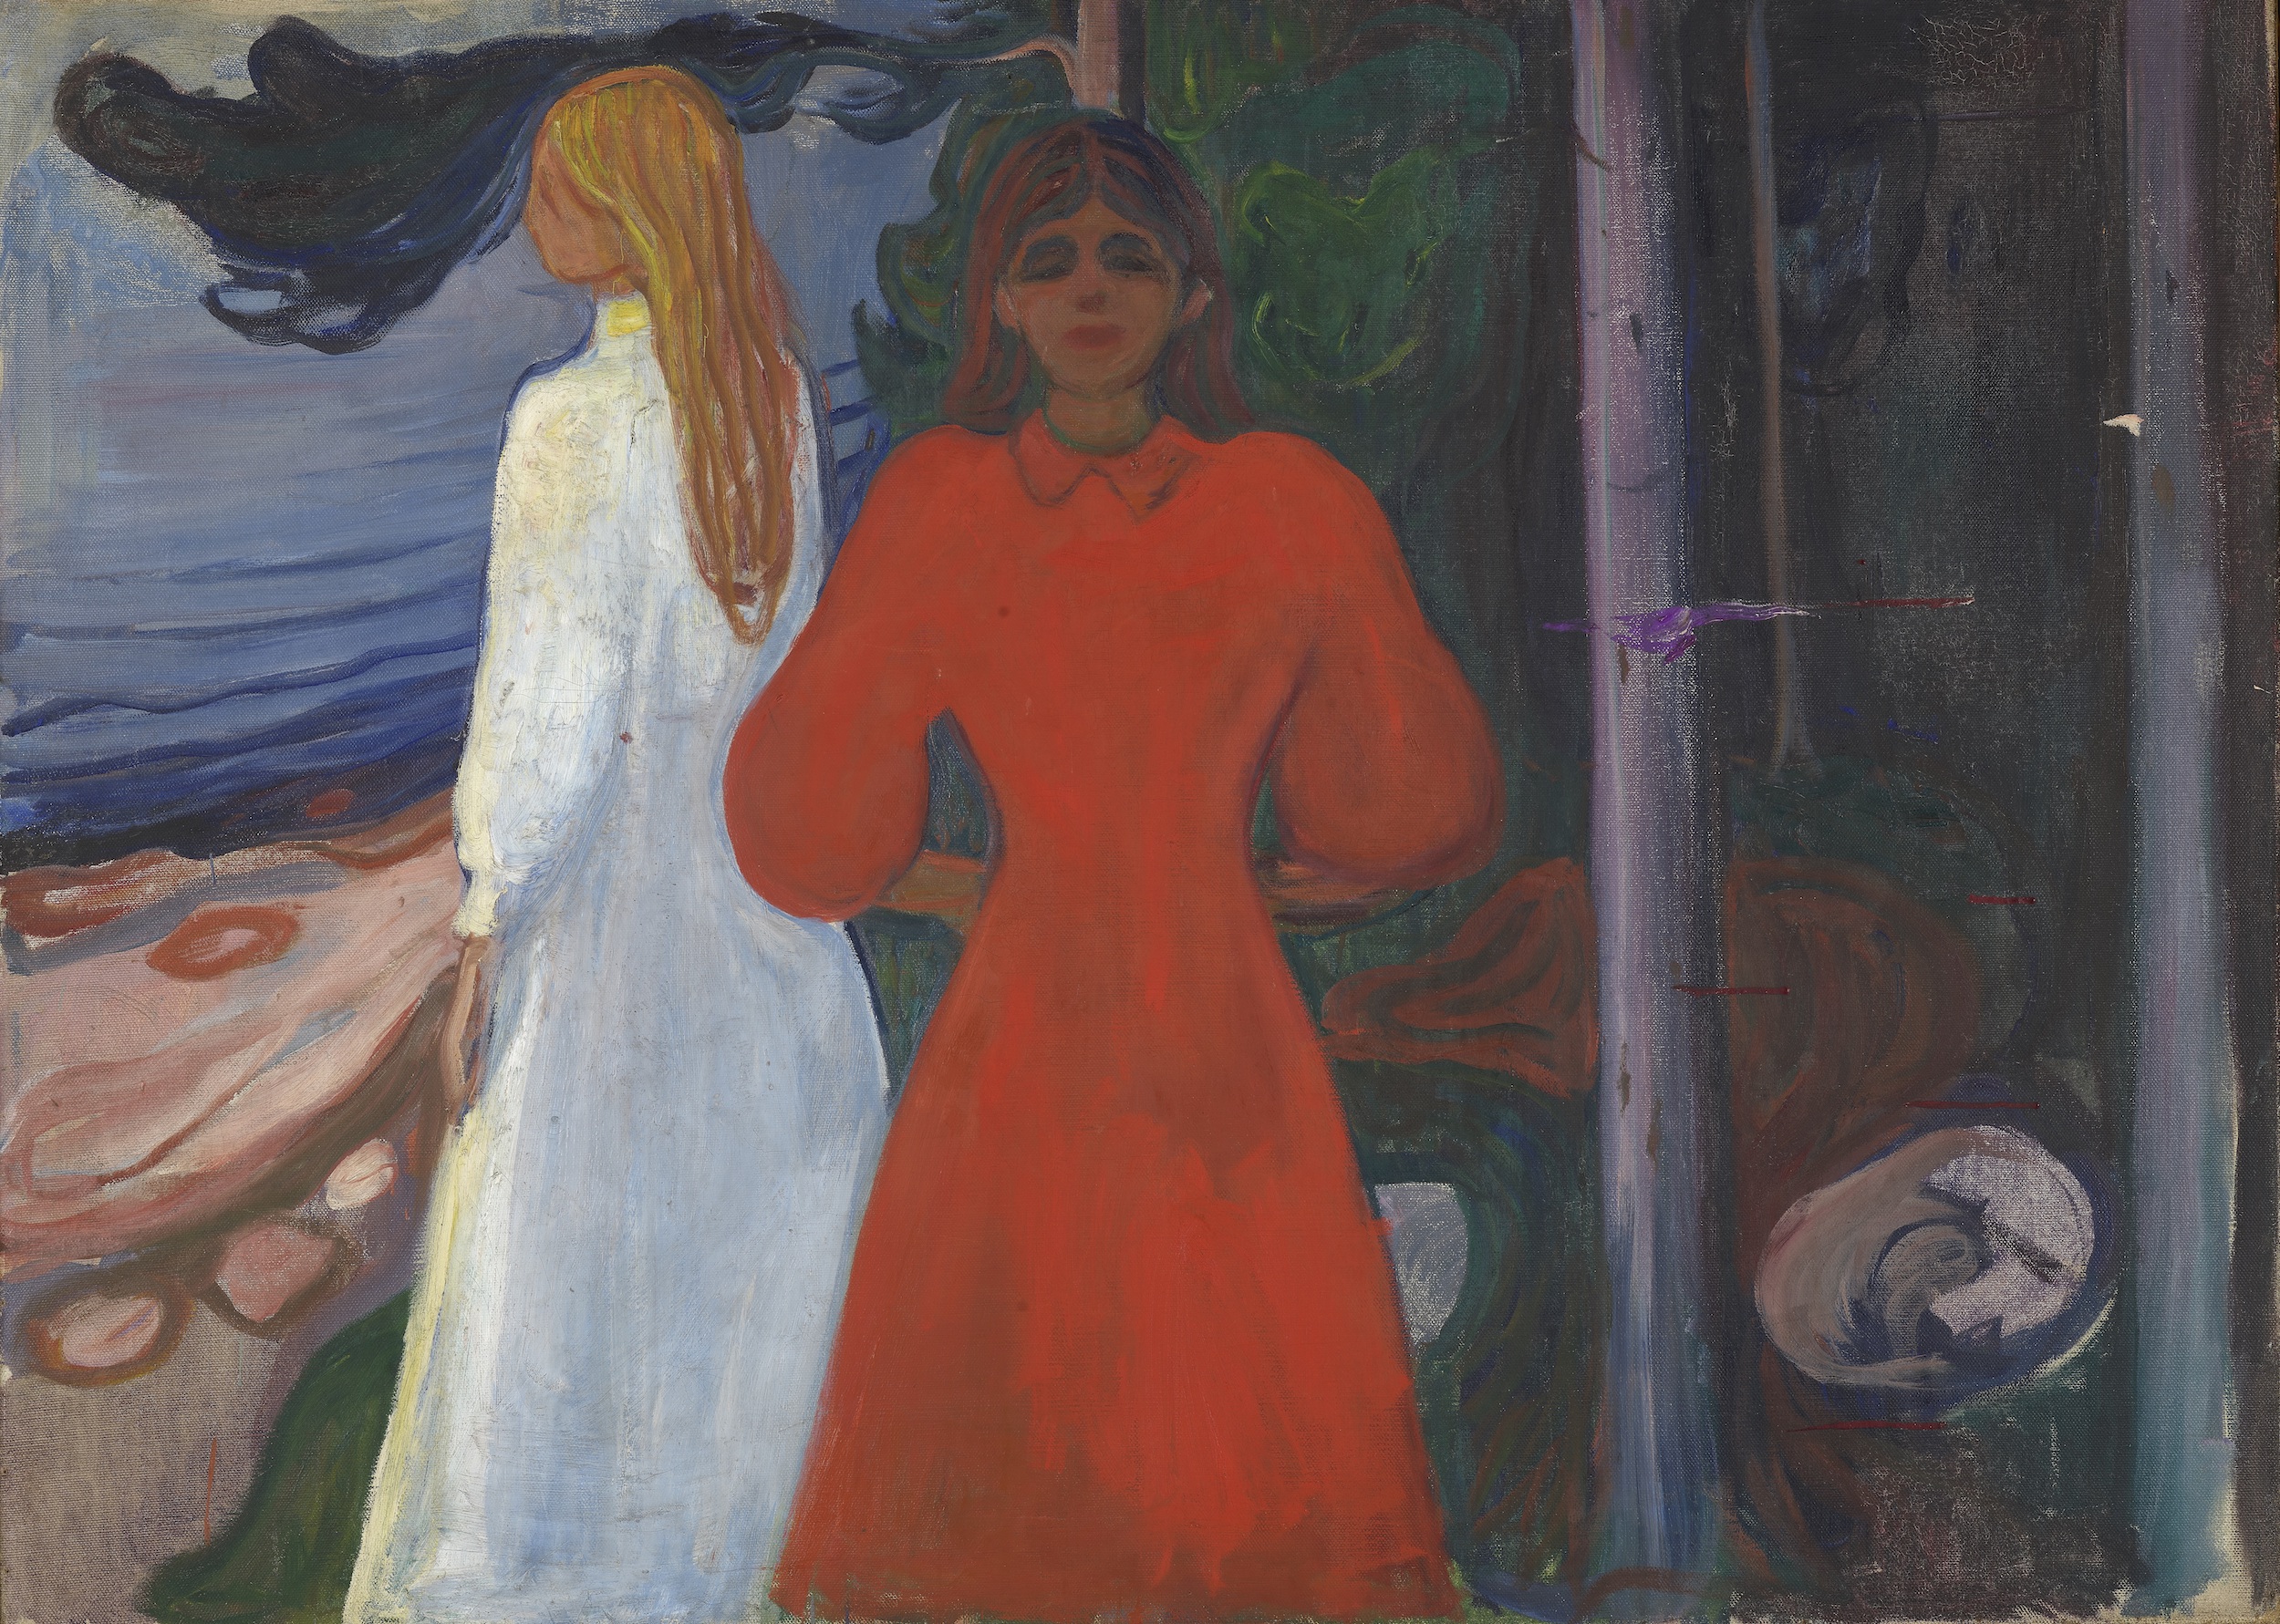 Edvard Munch (1863-1944), Rouge et blanc, 1899-1900. Huile sur toile, 93,5 x 129,5 cm. Oslo, Munchmuseet. Photo service de presse © Munchmuseet – MM.M.00460